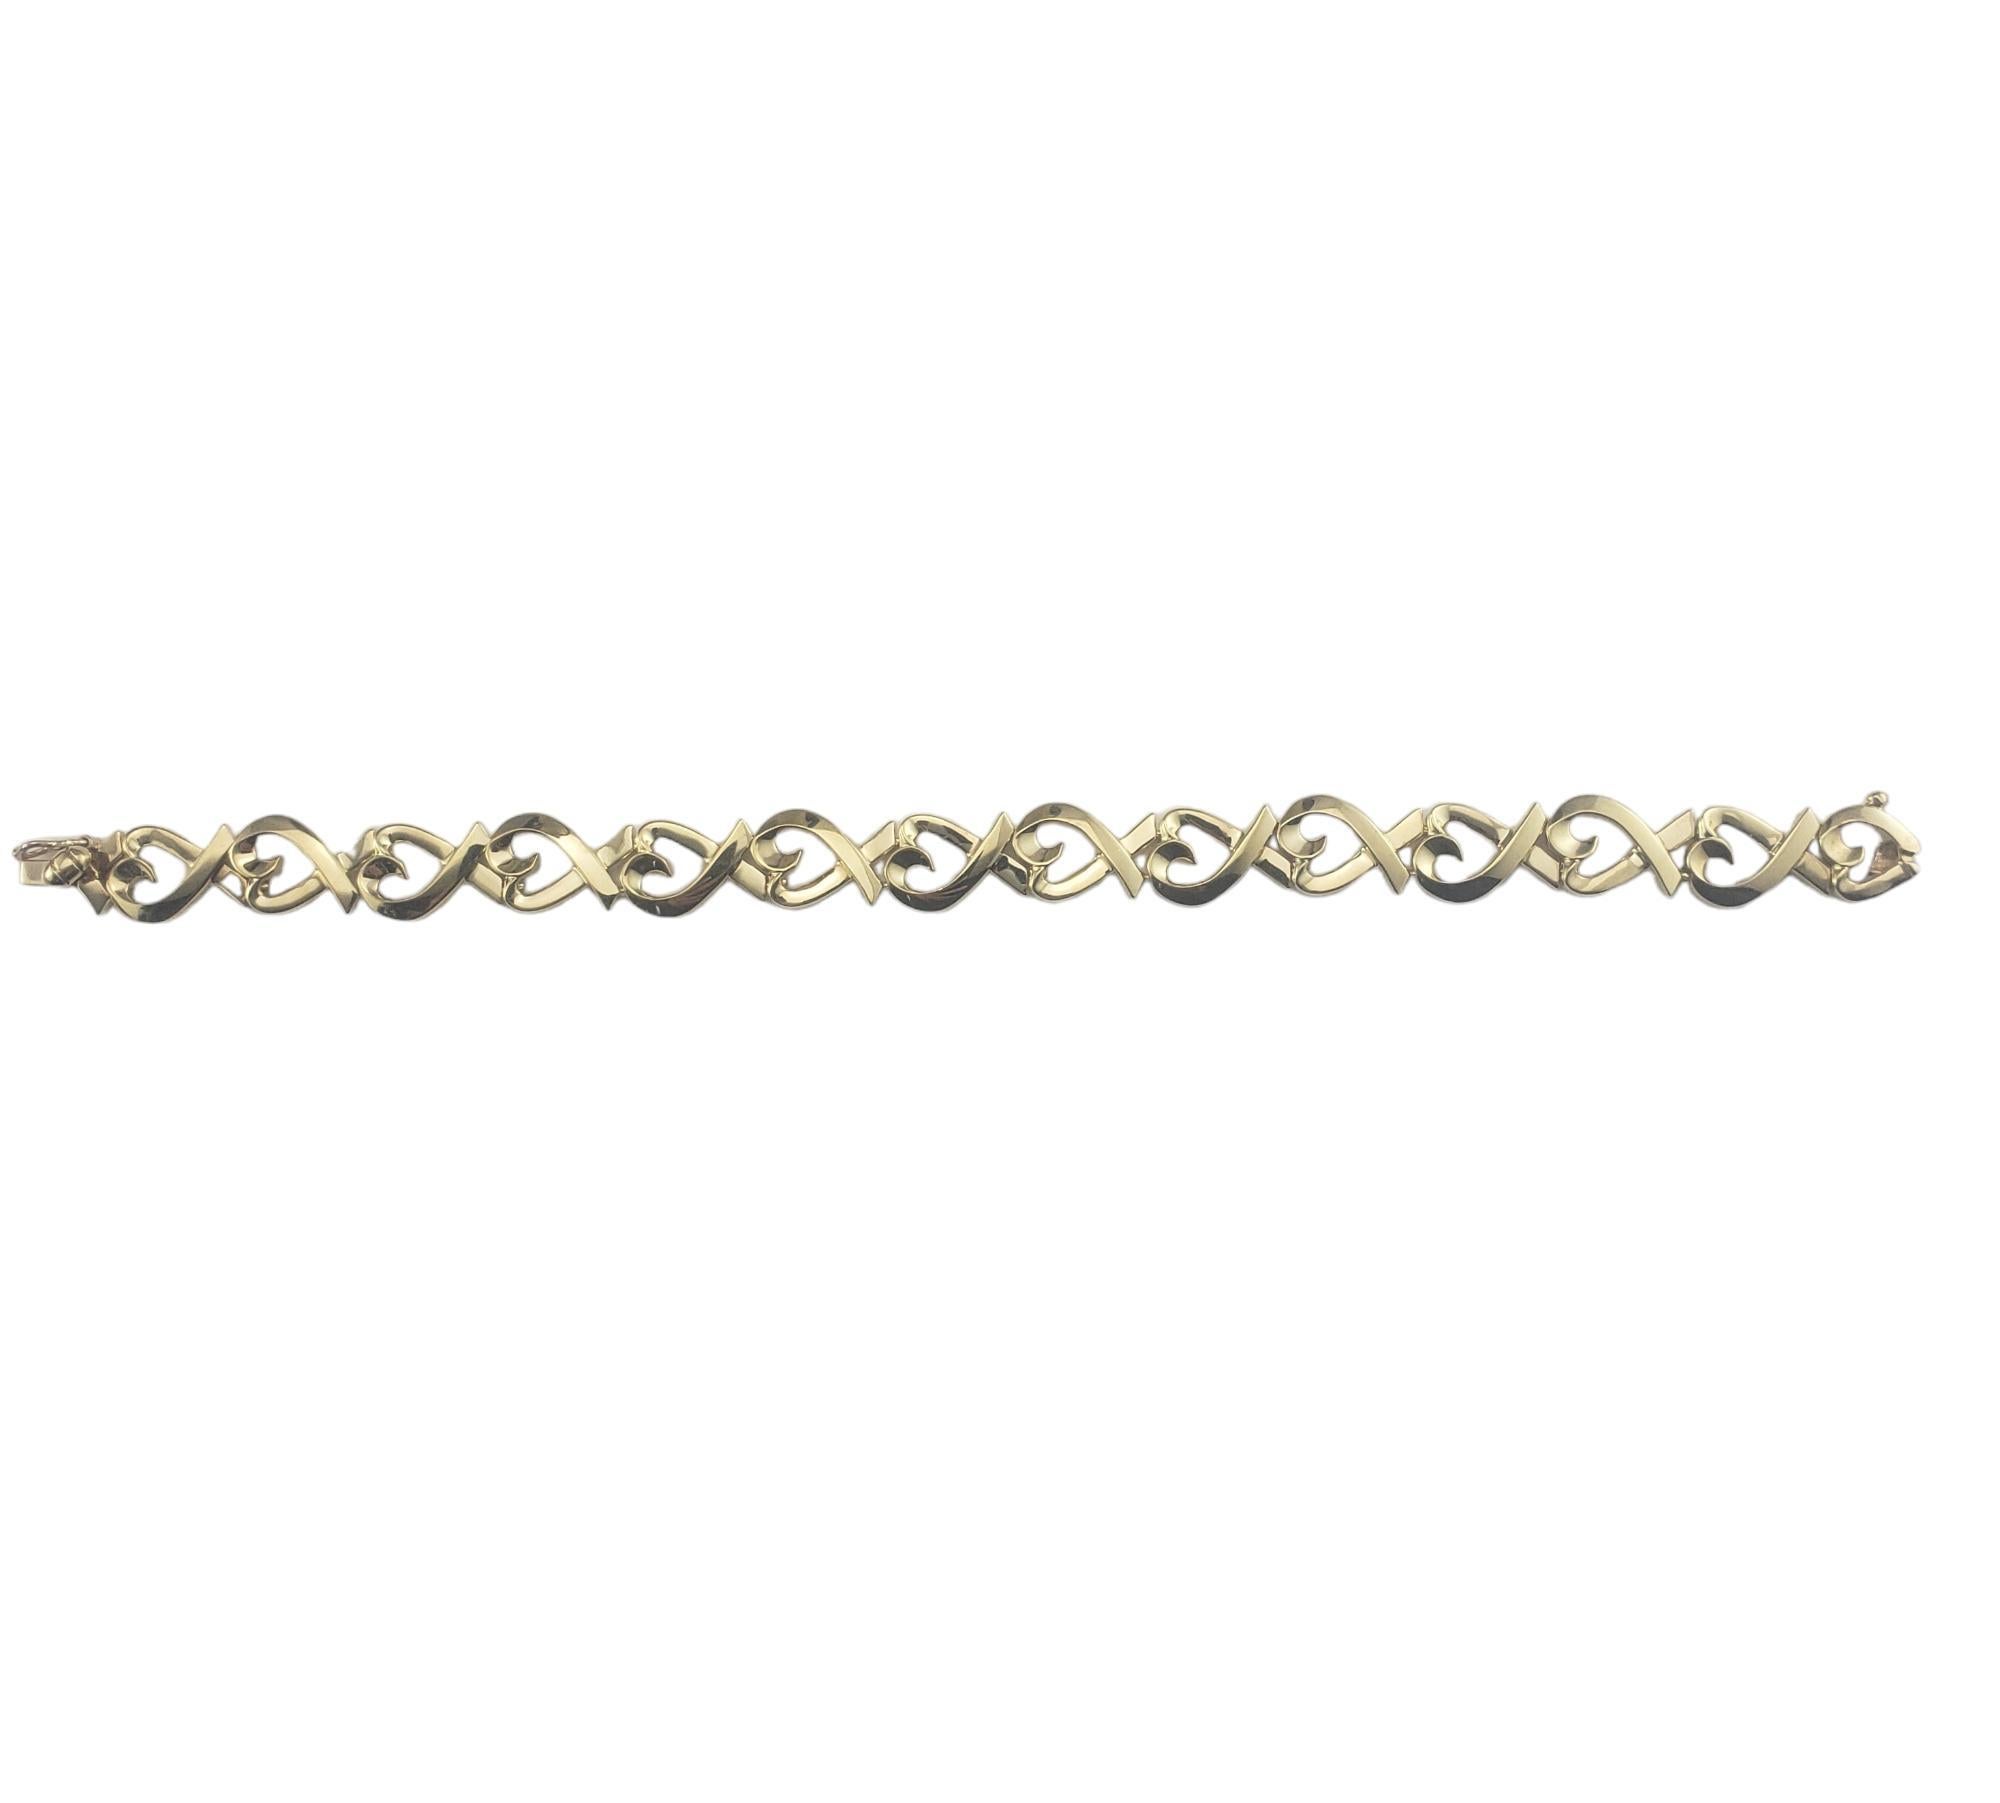 Tiffany & Co. Paloma Picasso Bracelet Coeurs d'amour en or jaune 18 carats

Ce superbe bracelet à maillons Loving Hearts est réalisé en or jaune 18 carats par Paloma Picasso pour Tiffany & Co.  

Largeur : 10 mm.

Taille : 6.75 pouces

Hallmark : 